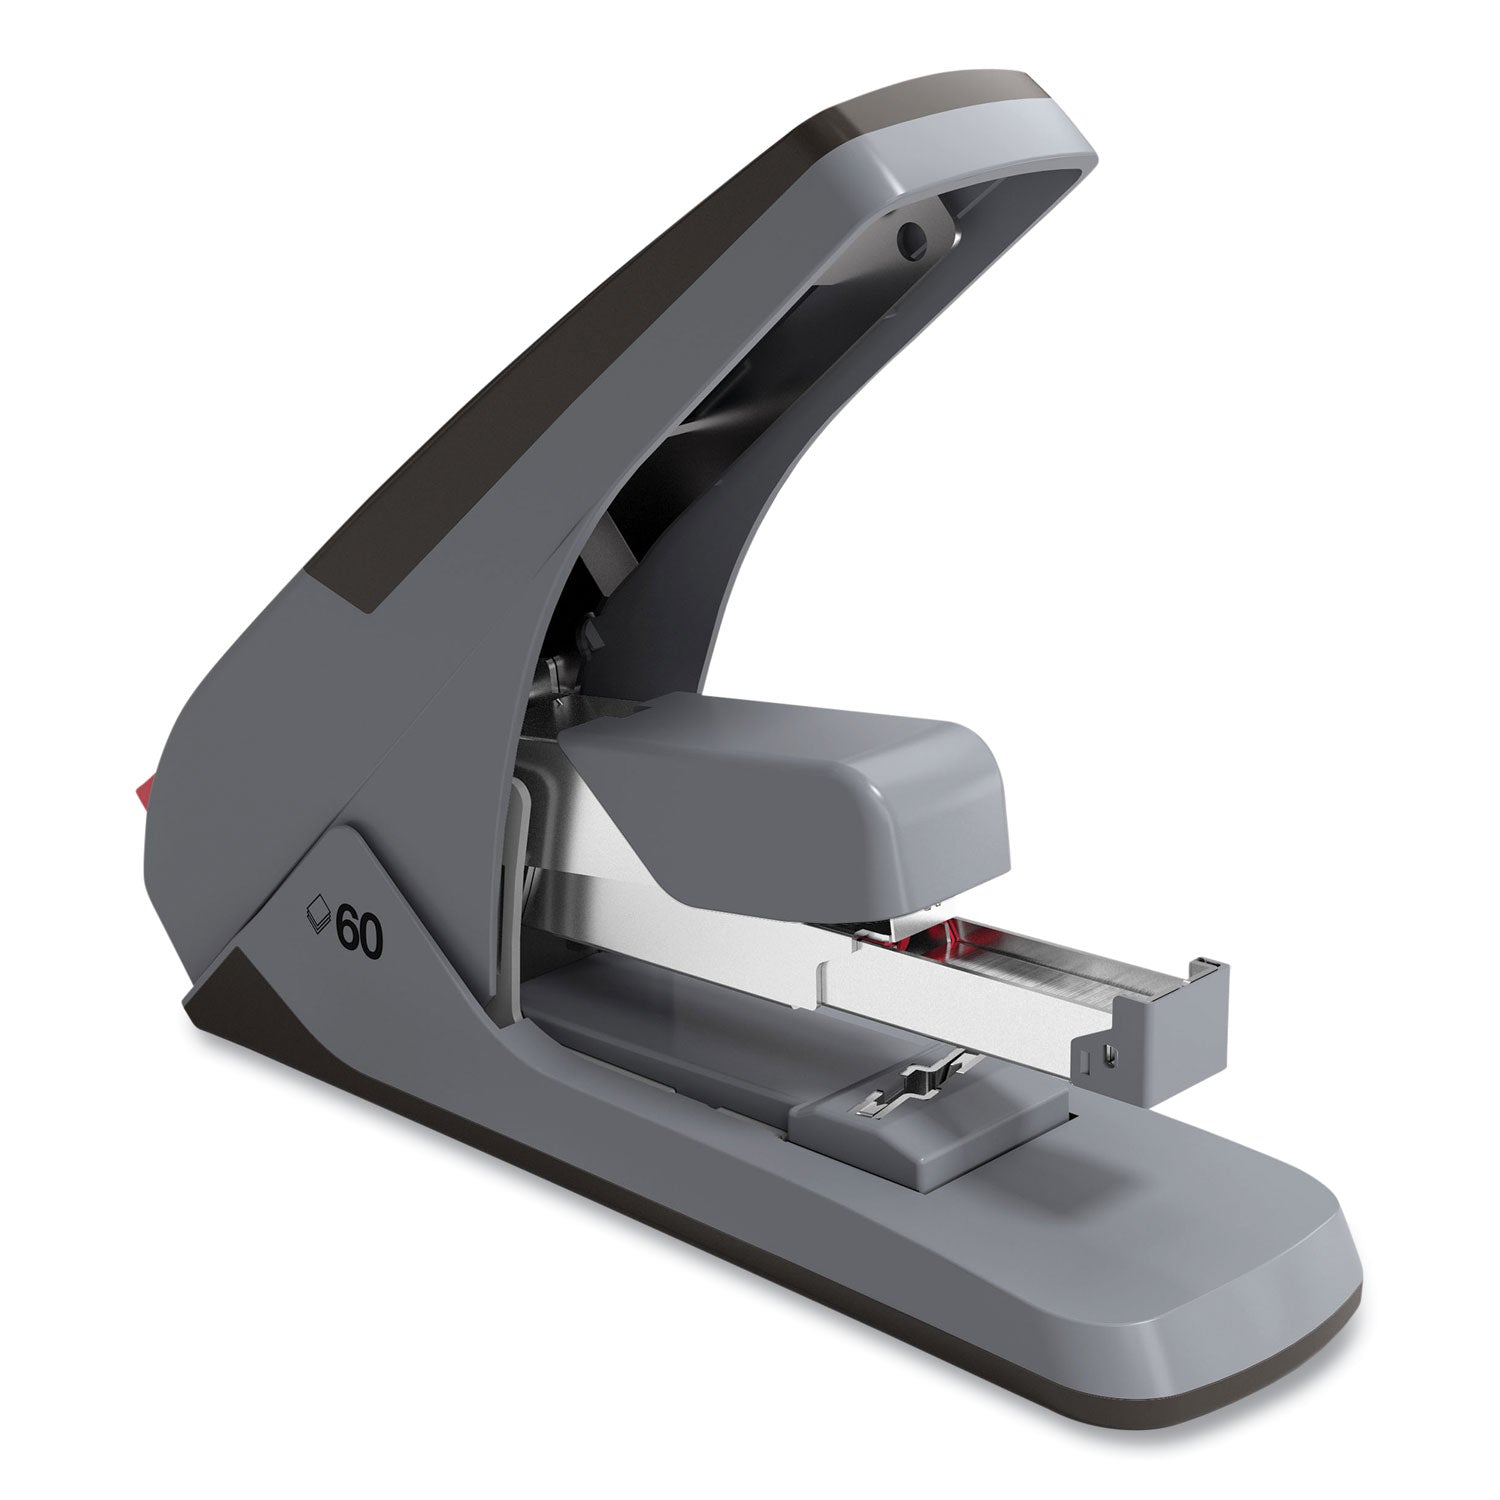 one-touch-desktop-stapler-60-or-25-sheet-capacity-gray-black_tud331288 - 2